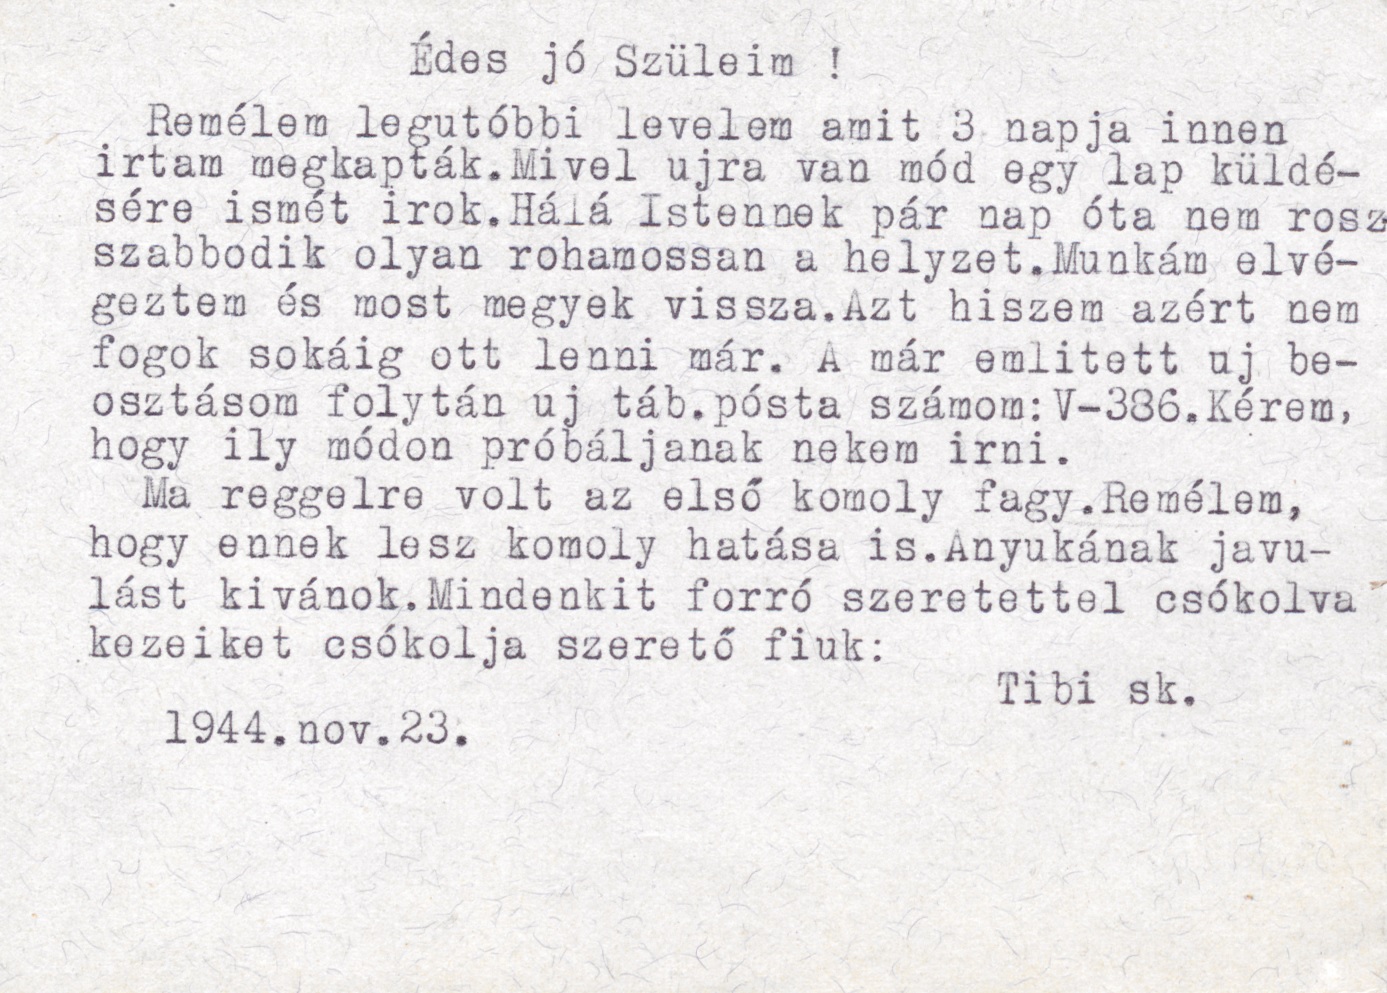 Eördögh Tibor levele szüleihez, 1946. november 23.